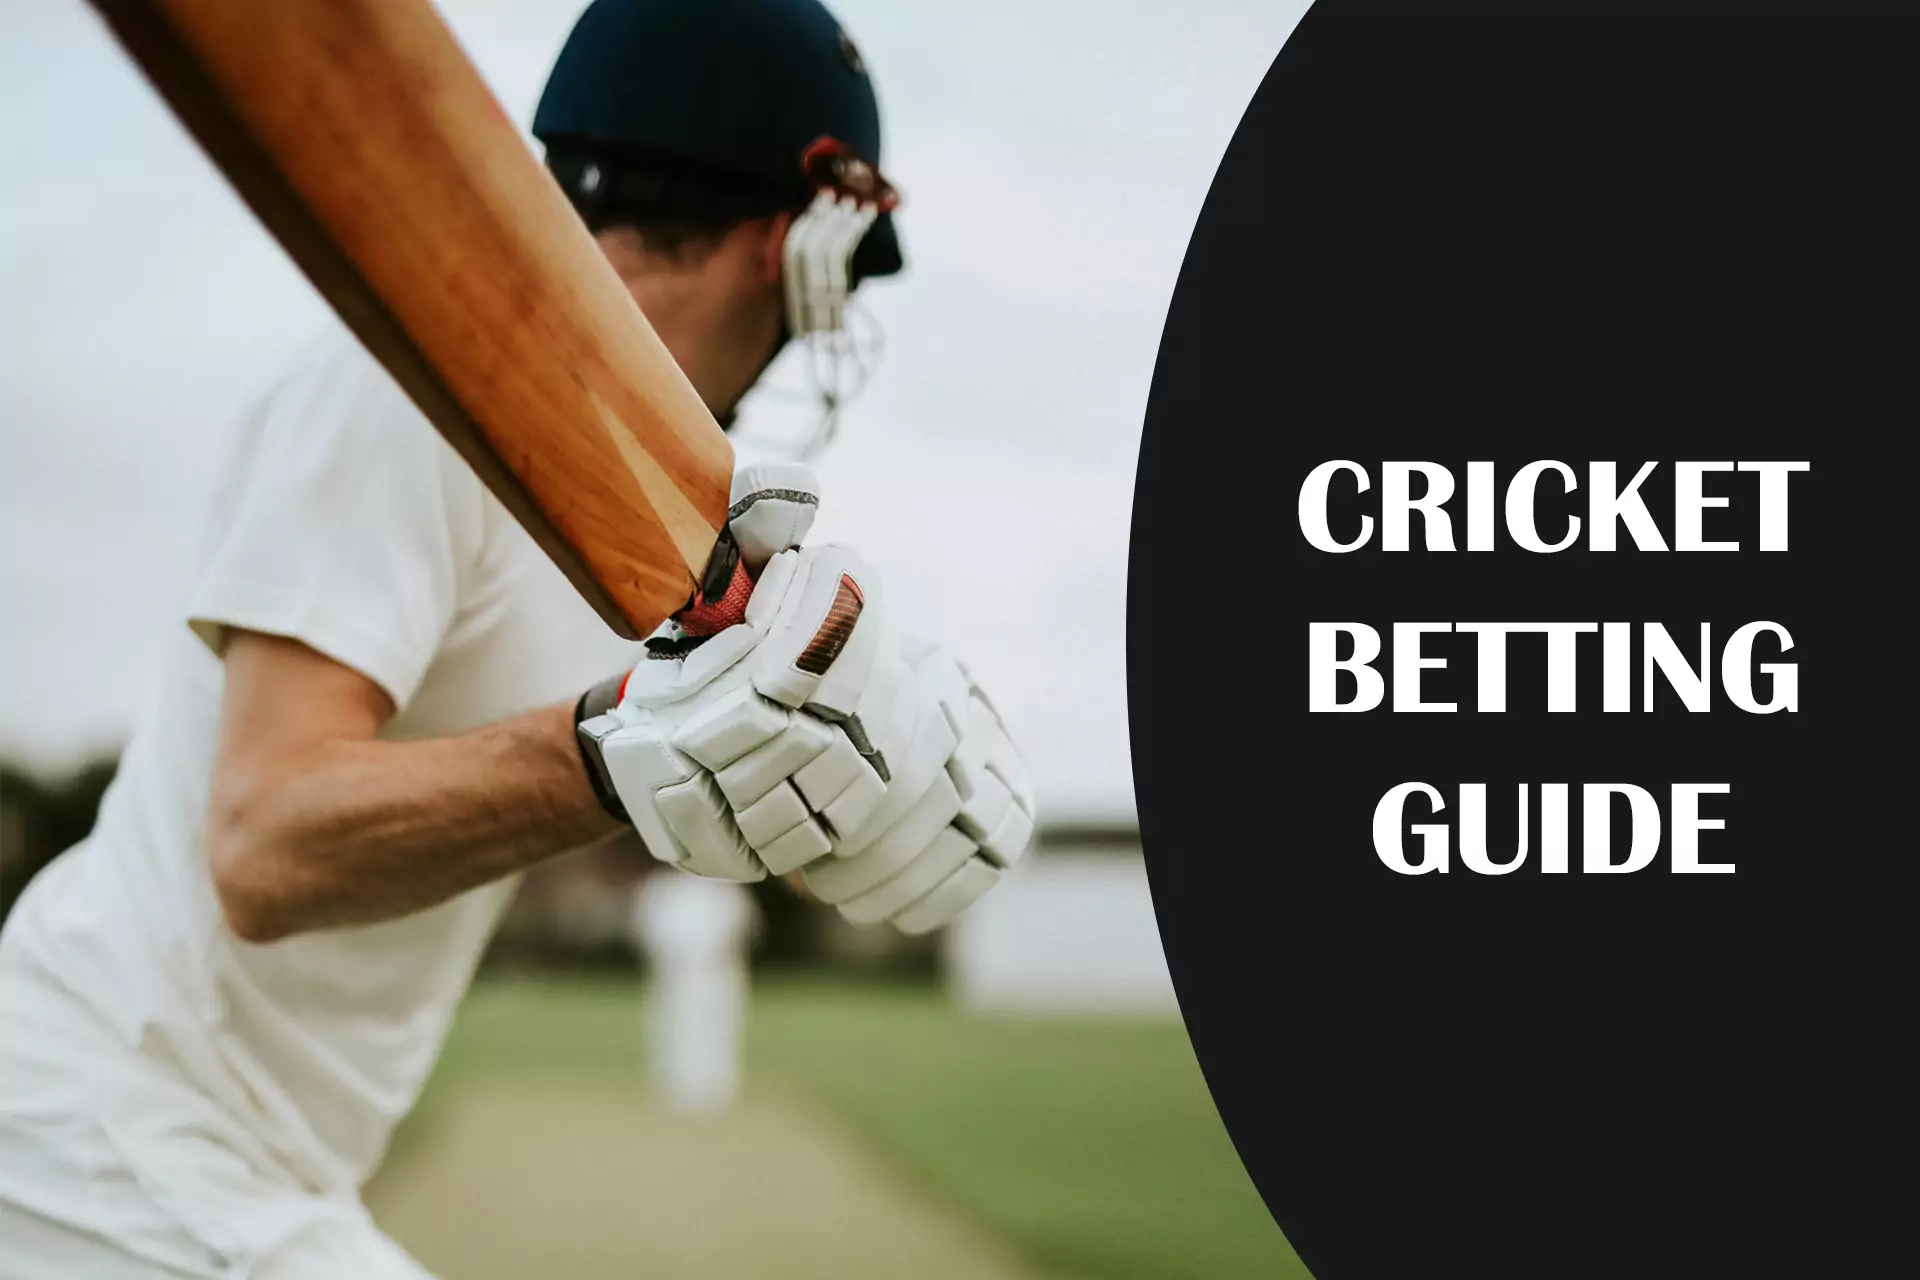 हमने आपके लिए क्रिकेट सट्टेबाजी के लेख तैयार किए हैं ।